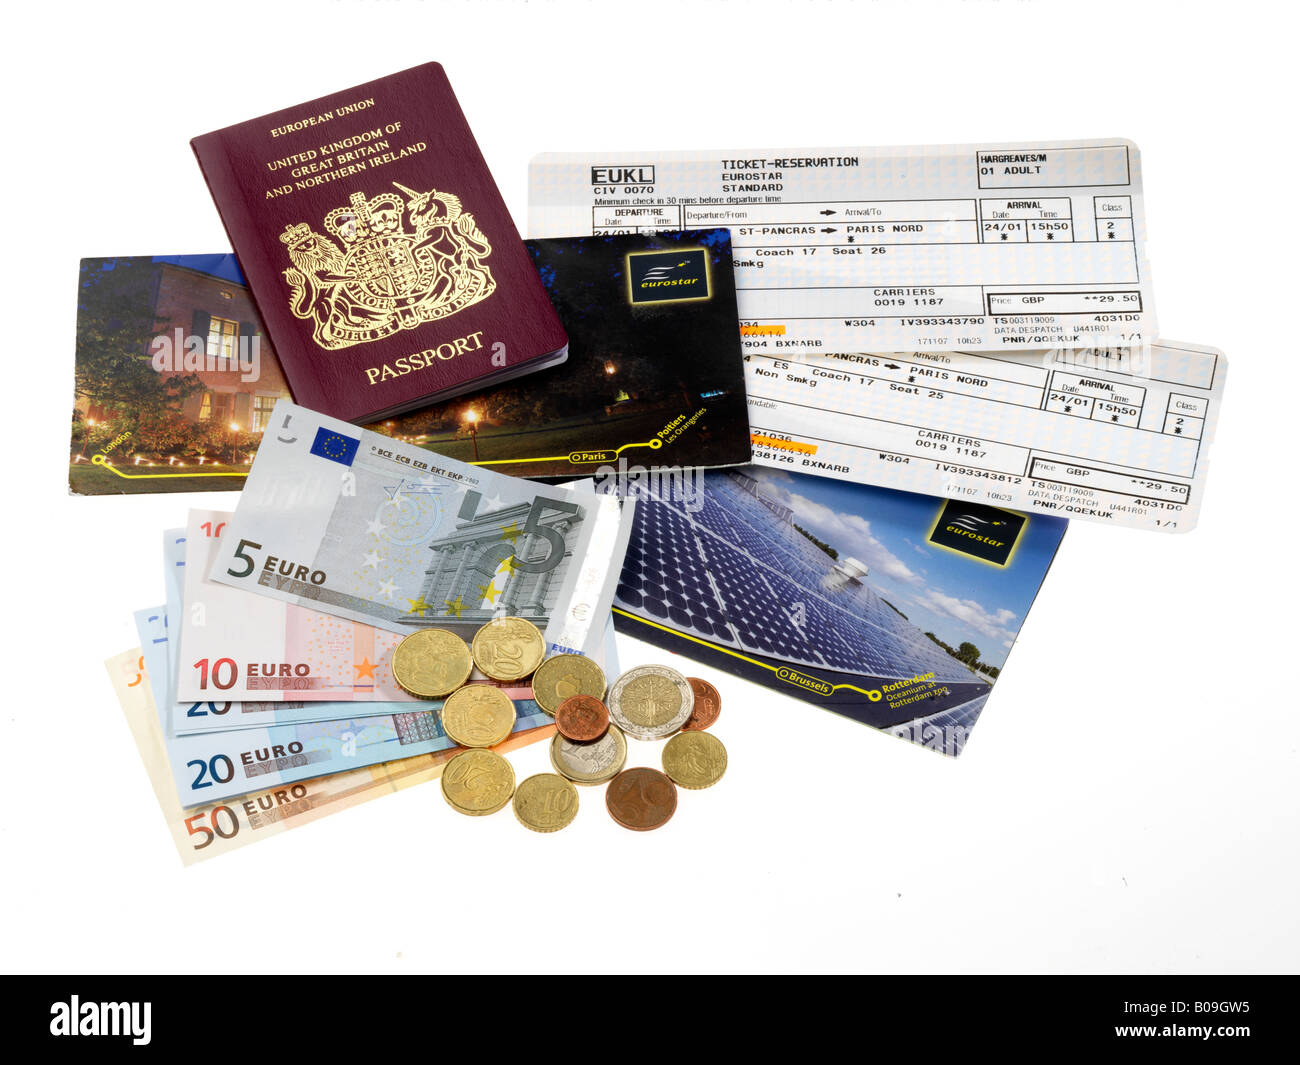 Eurostar tickets, passports & Euros Stock Photo